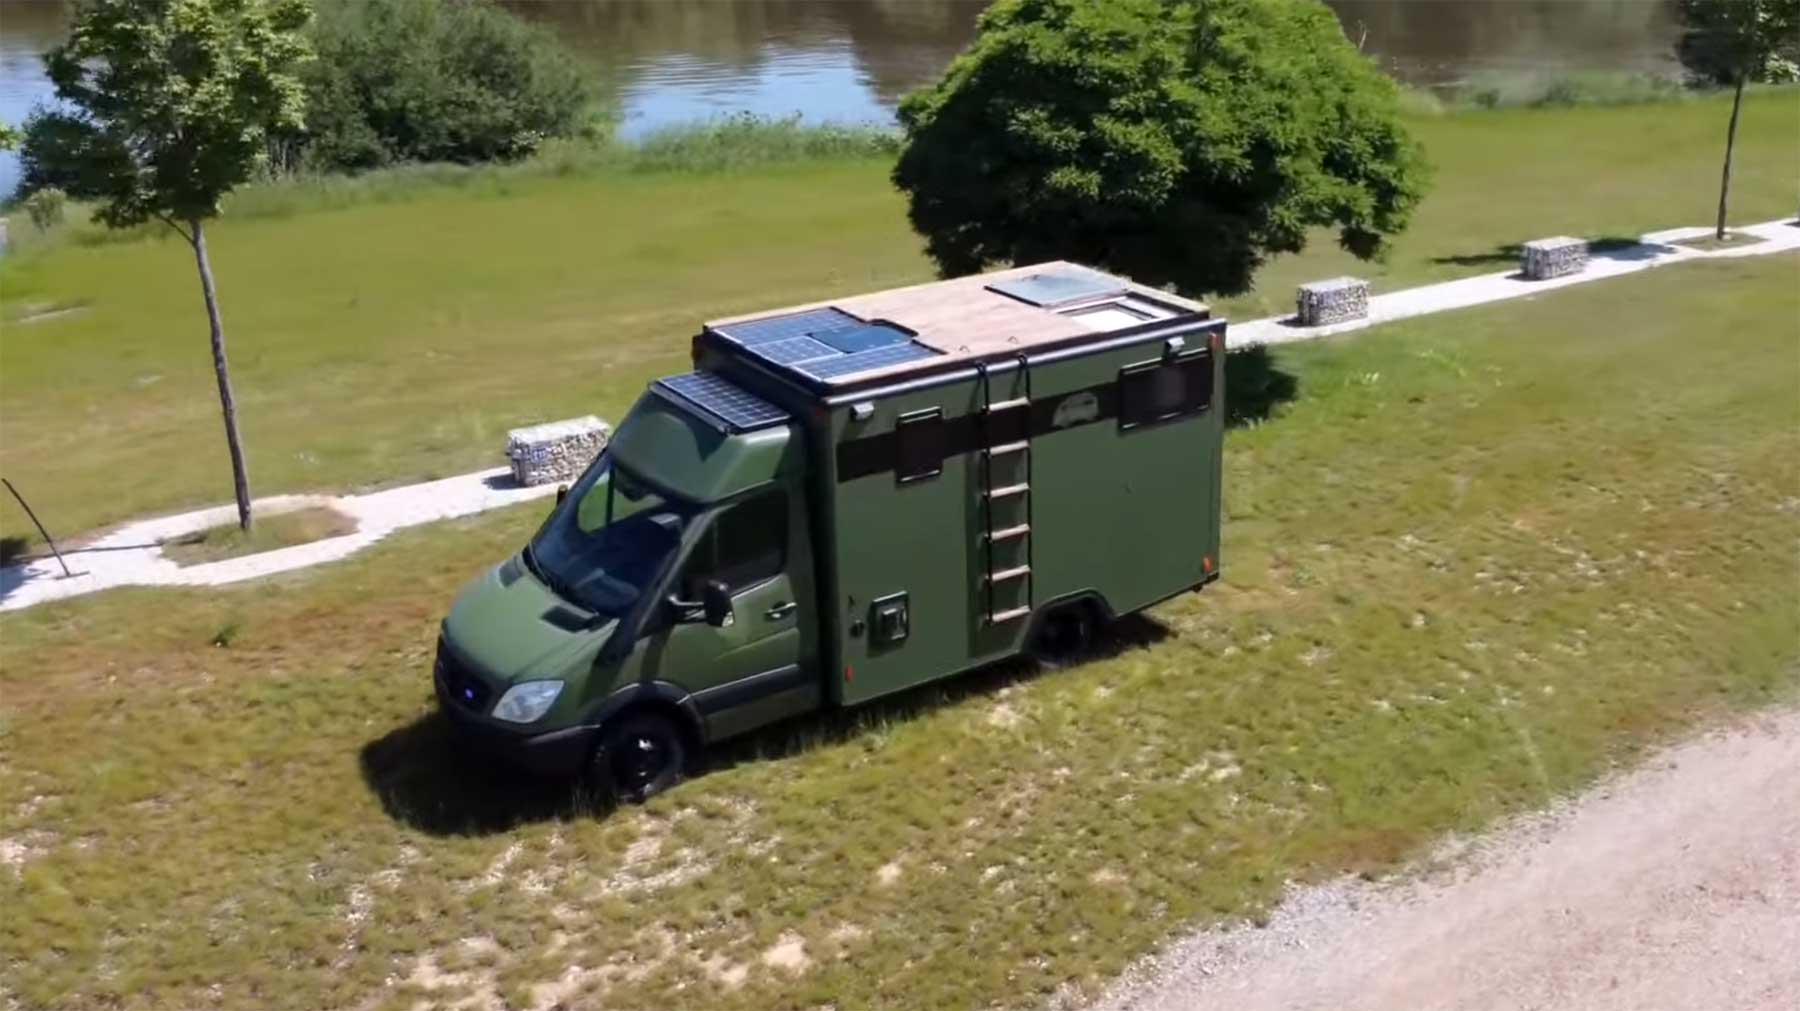 Alten Krankenwagen zum Campingbus umgebaut